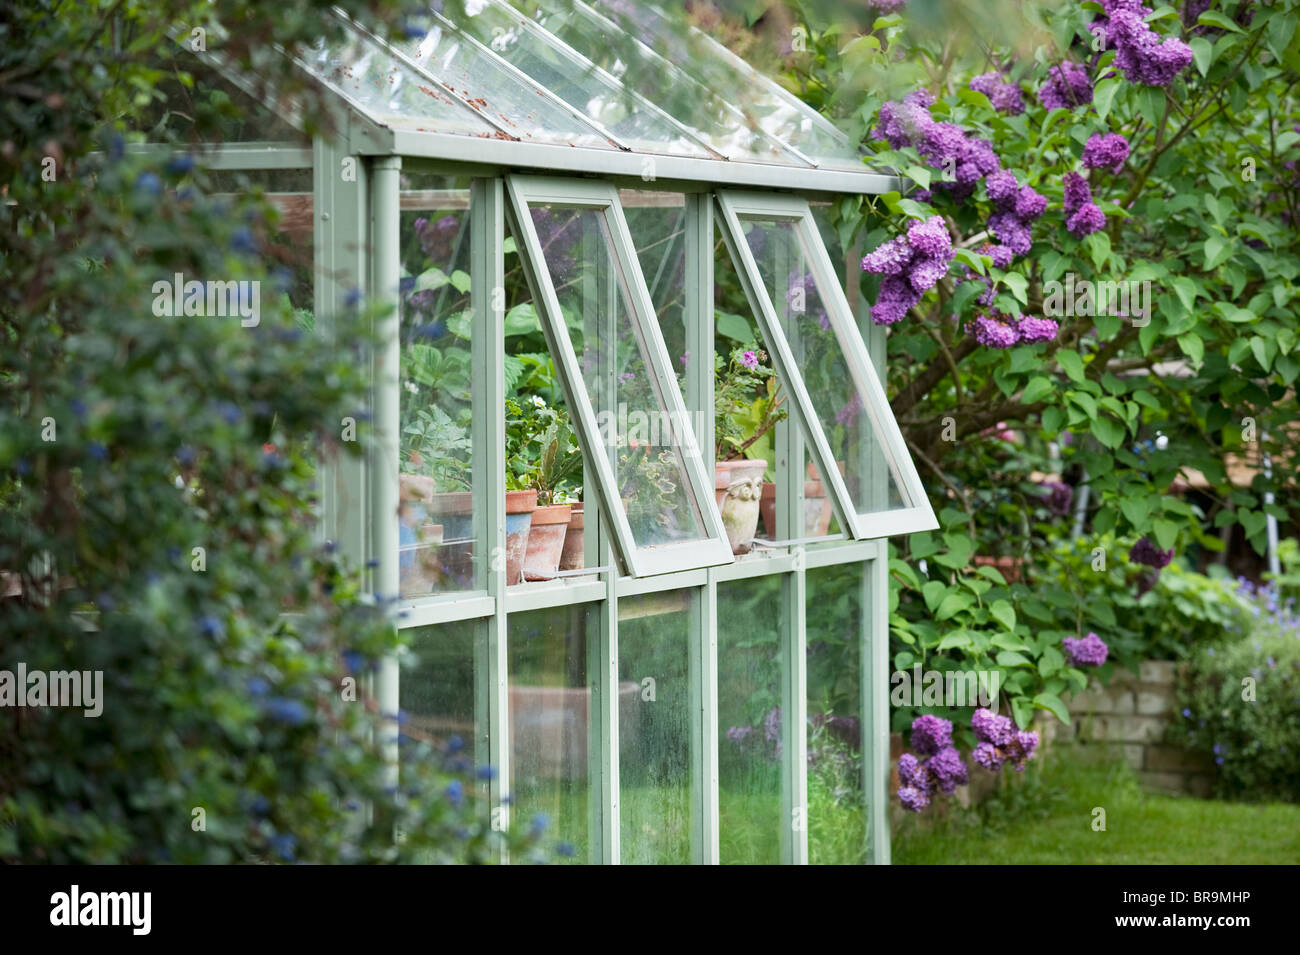 Invernadero en el jardín de atrás con las ventanas abiertas para la ventilación Foto de stock